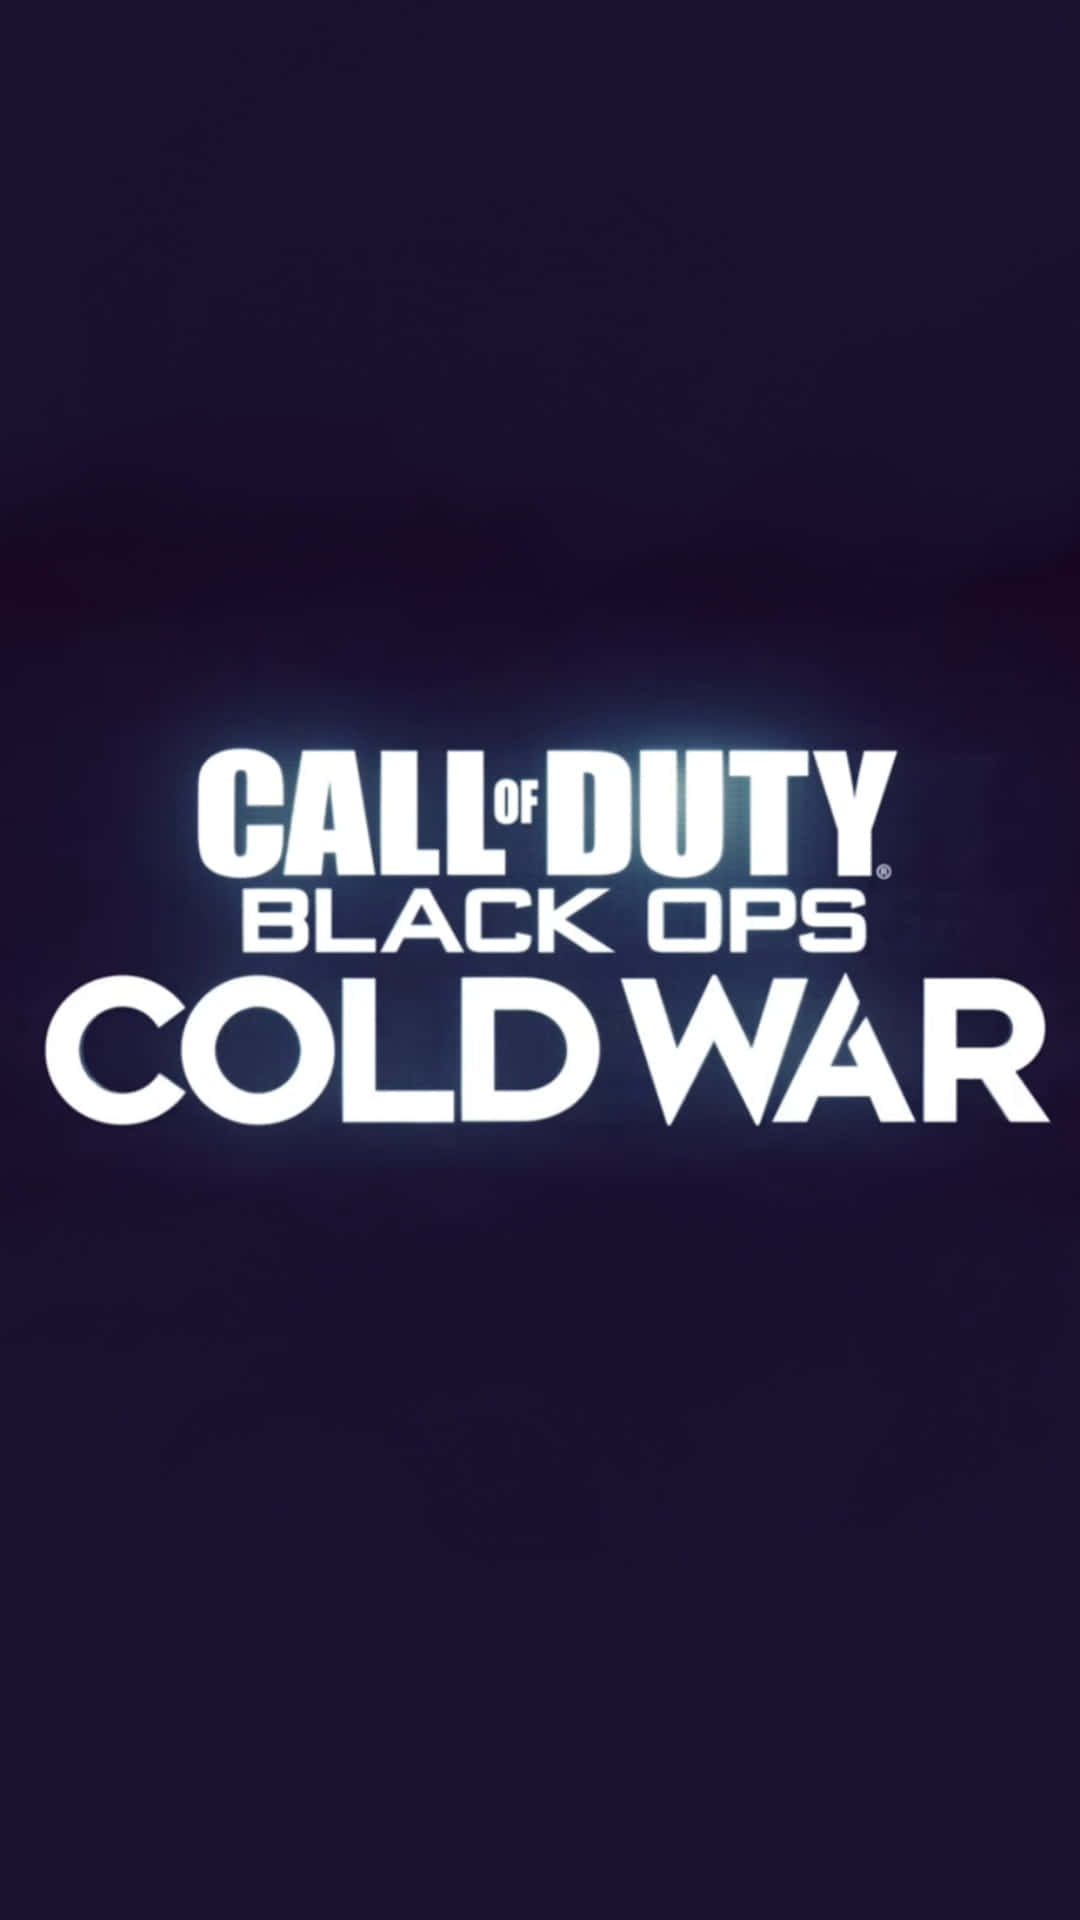 Hochauflösendeskey Art Hd Hintergrundbild Von Call Of Duty Black Ops Cold War Für Das Mobiltelefon.